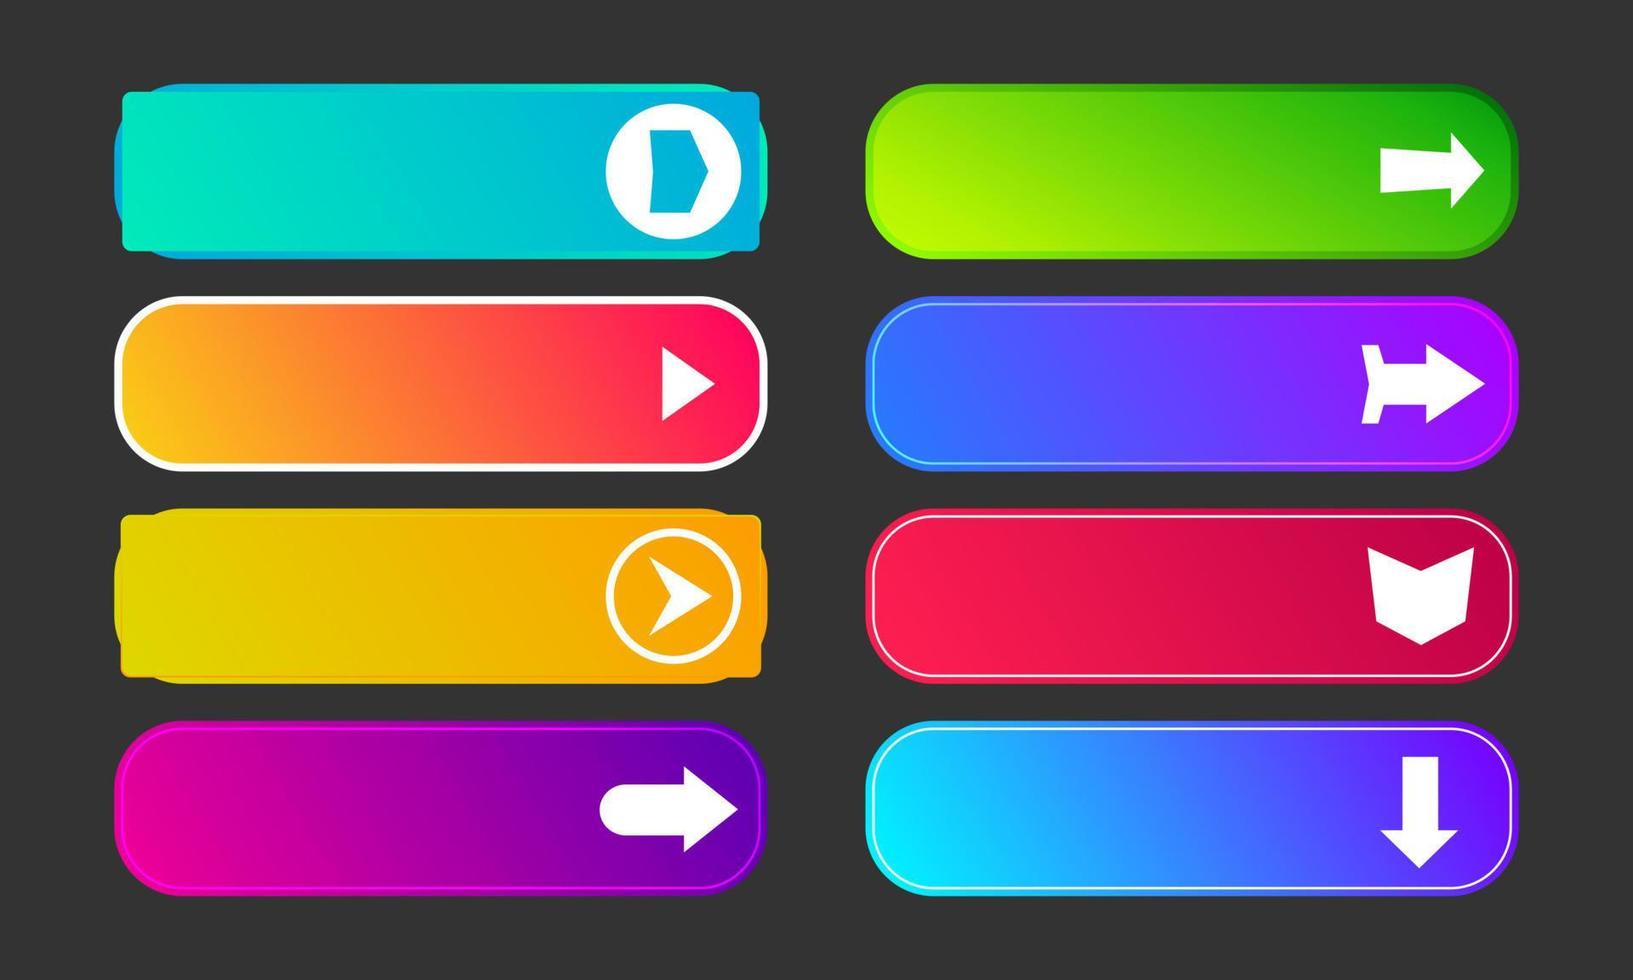 botões de gradiente coloridos com setas. conjunto de oito botões web abstratos modernos. ilustração vetorial vetor